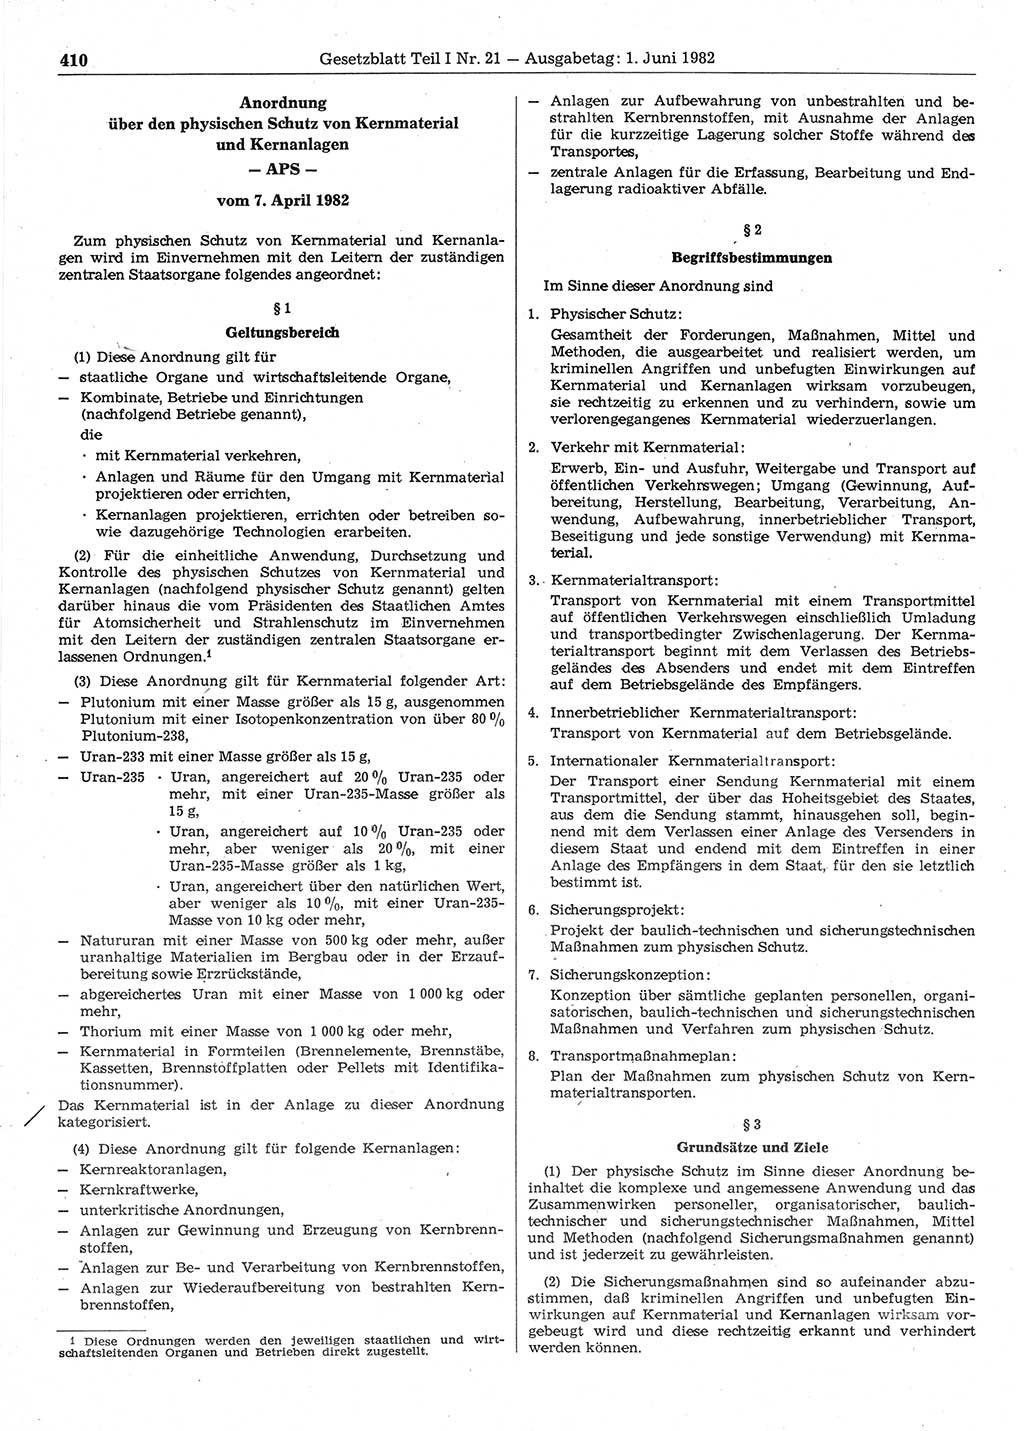 Gesetzblatt (GBl.) der Deutschen Demokratischen Republik (DDR) Teil Ⅰ 1982, Seite 410 (GBl. DDR Ⅰ 1982, S. 410)